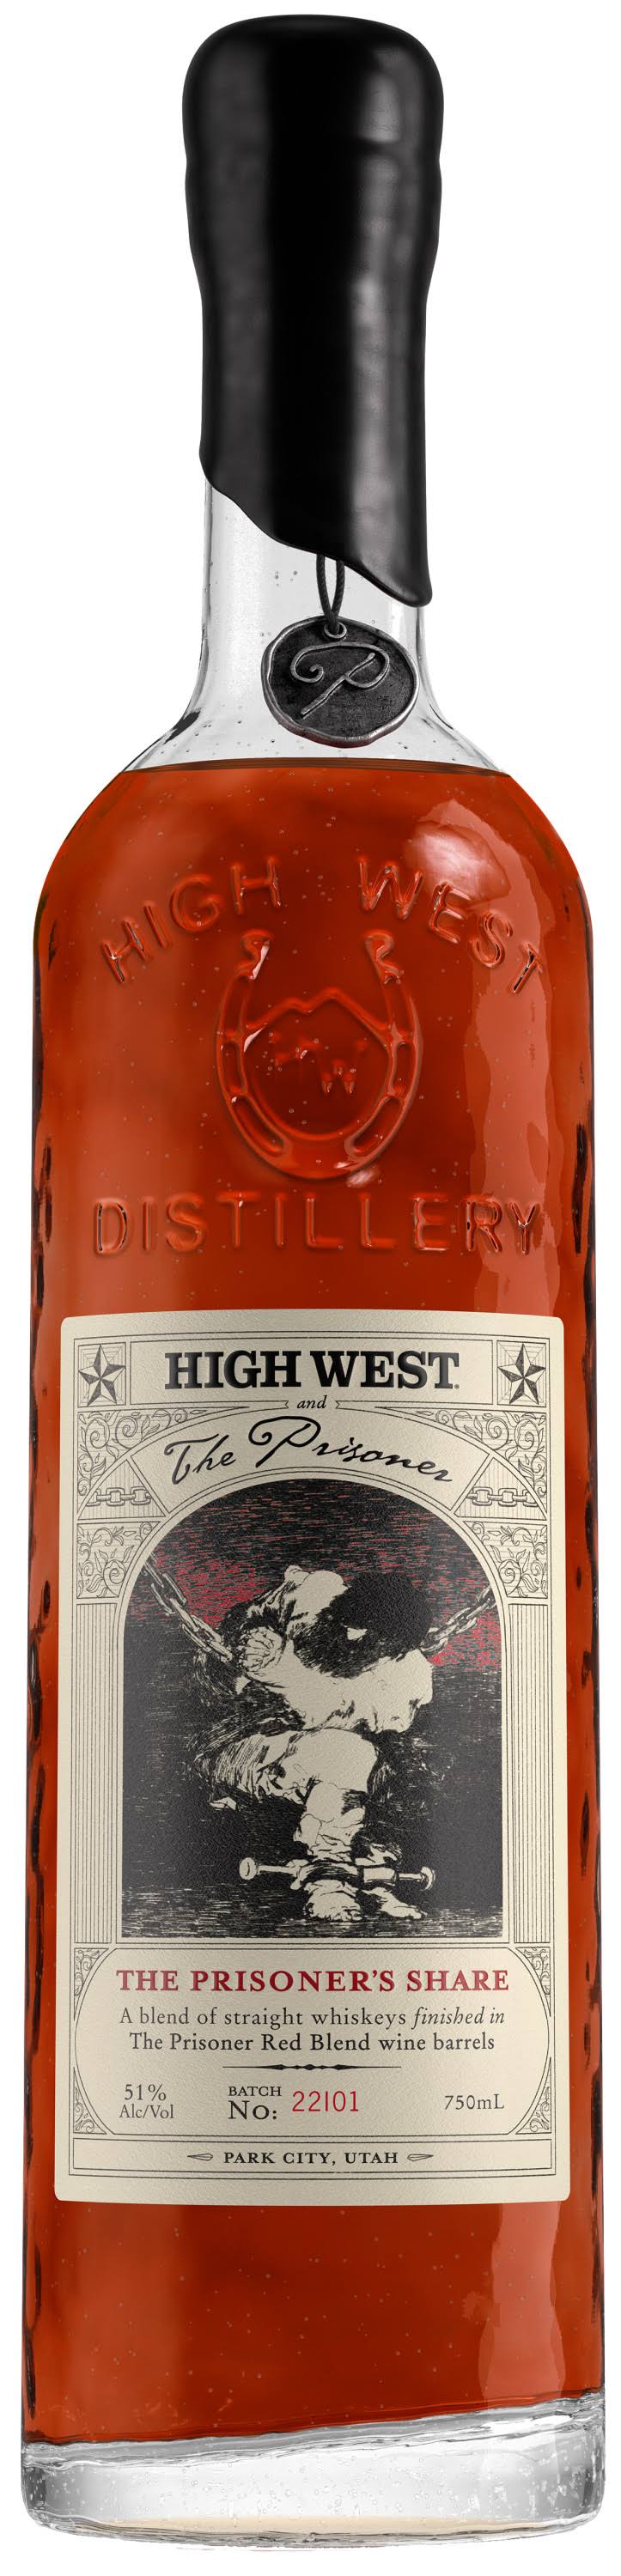 High West The Prisoner's Share Blended Whiskey 750ml Bottle